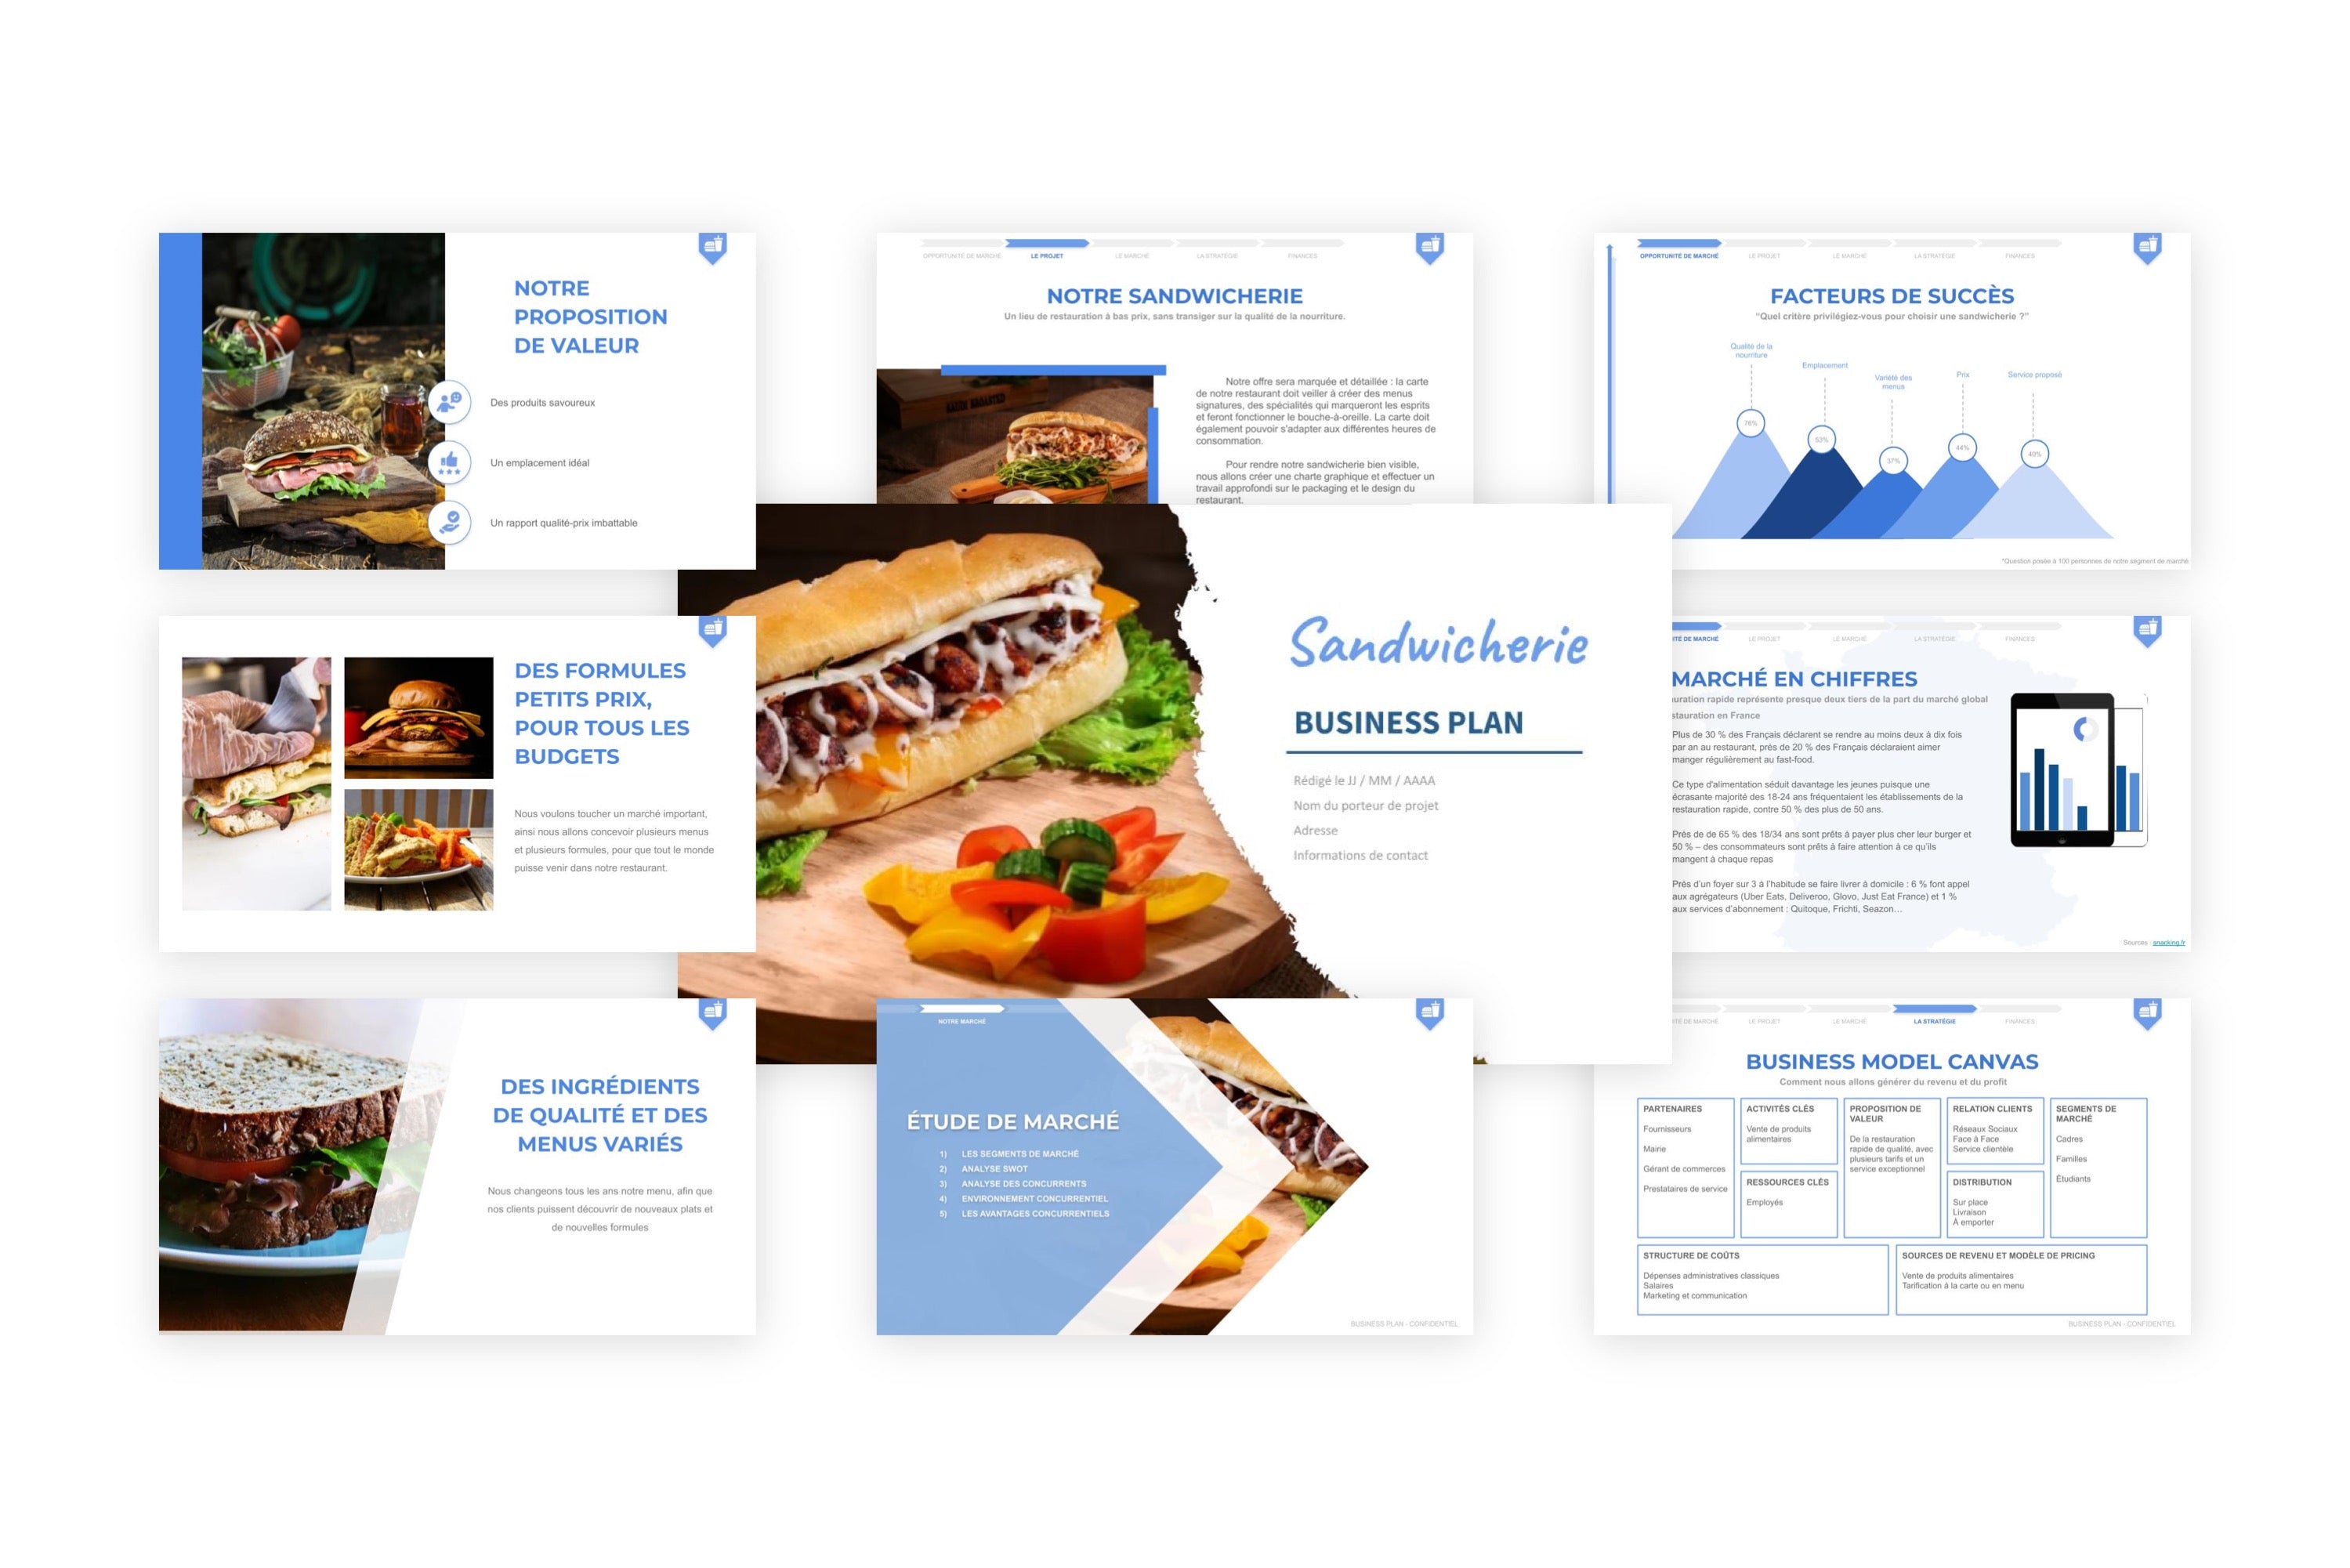 Sandwicherie Business Plan modele